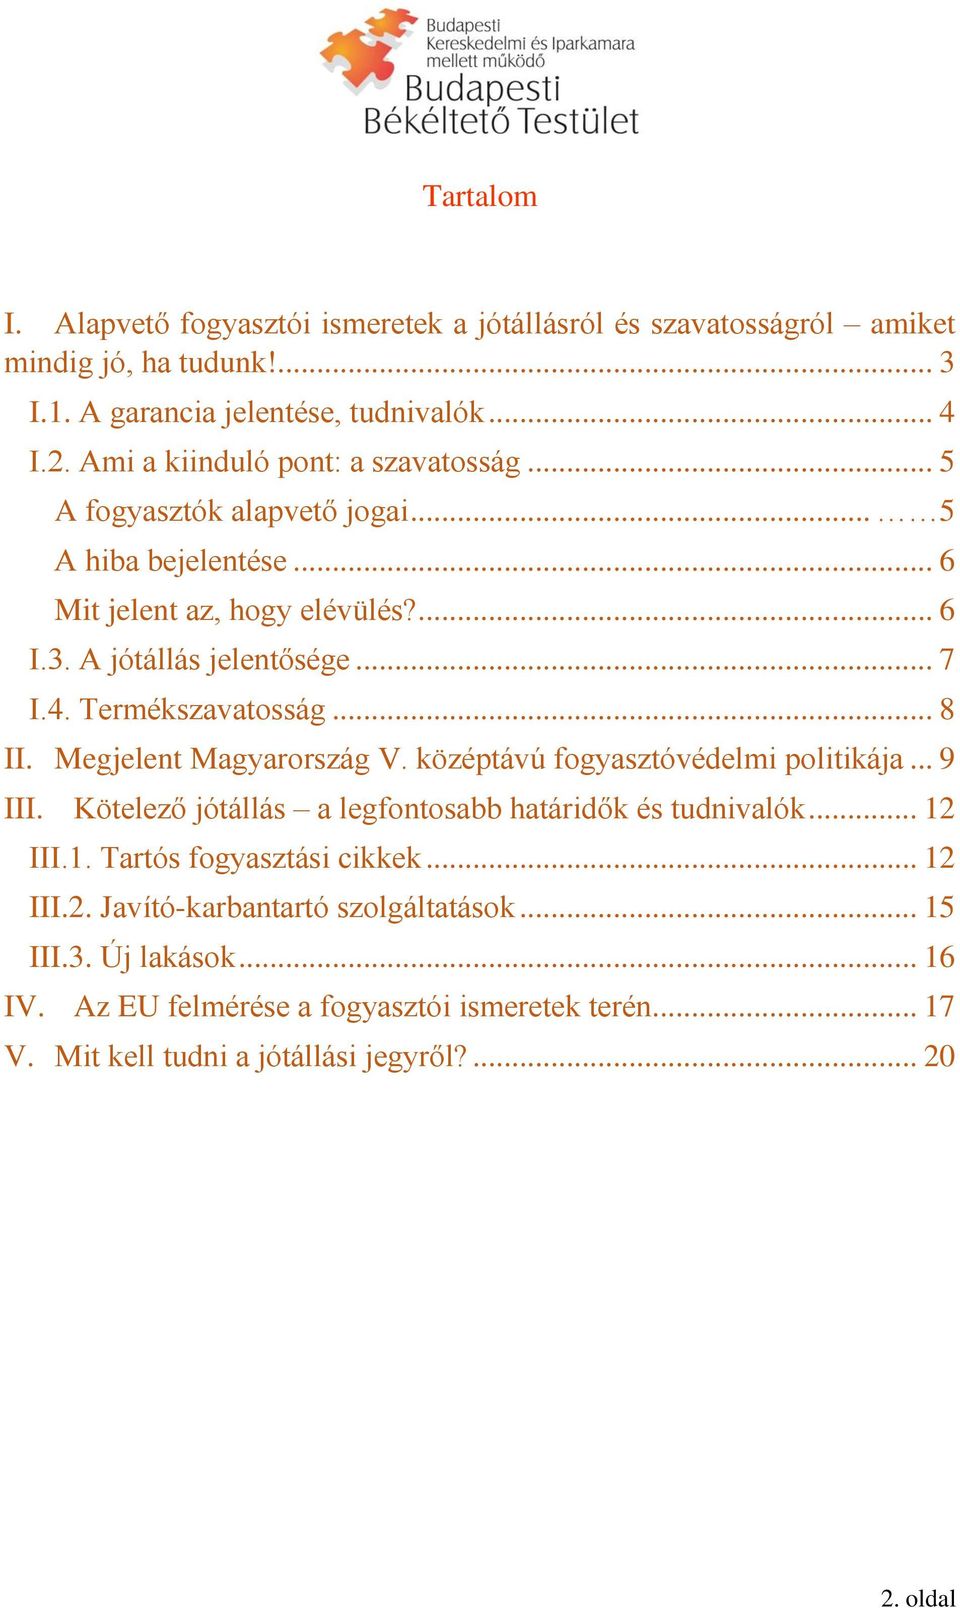 Termékszavatosság... 8 II. Megjelent Magyarország V. középtávú fogyasztóvédelmi politikája... 9 III. Kötelező jótállás a legfontosabb határidők és tudnivalók... 12